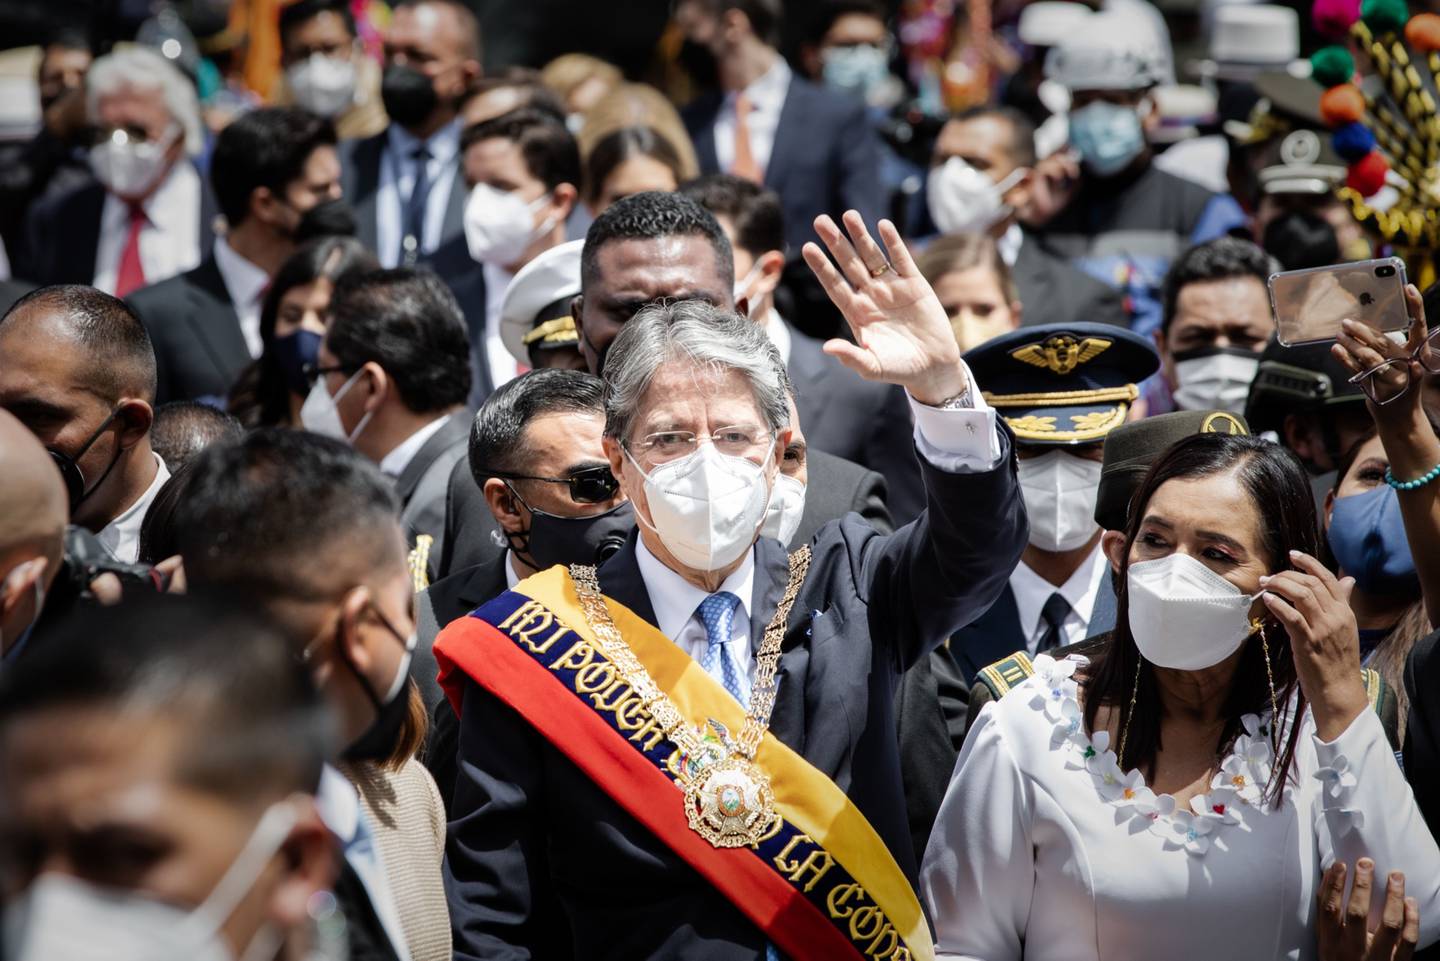 El nuevo presidente de Ecuador sale de la Asamblea Nacional, en Quito, el 24 de mayo de 2021.dfd